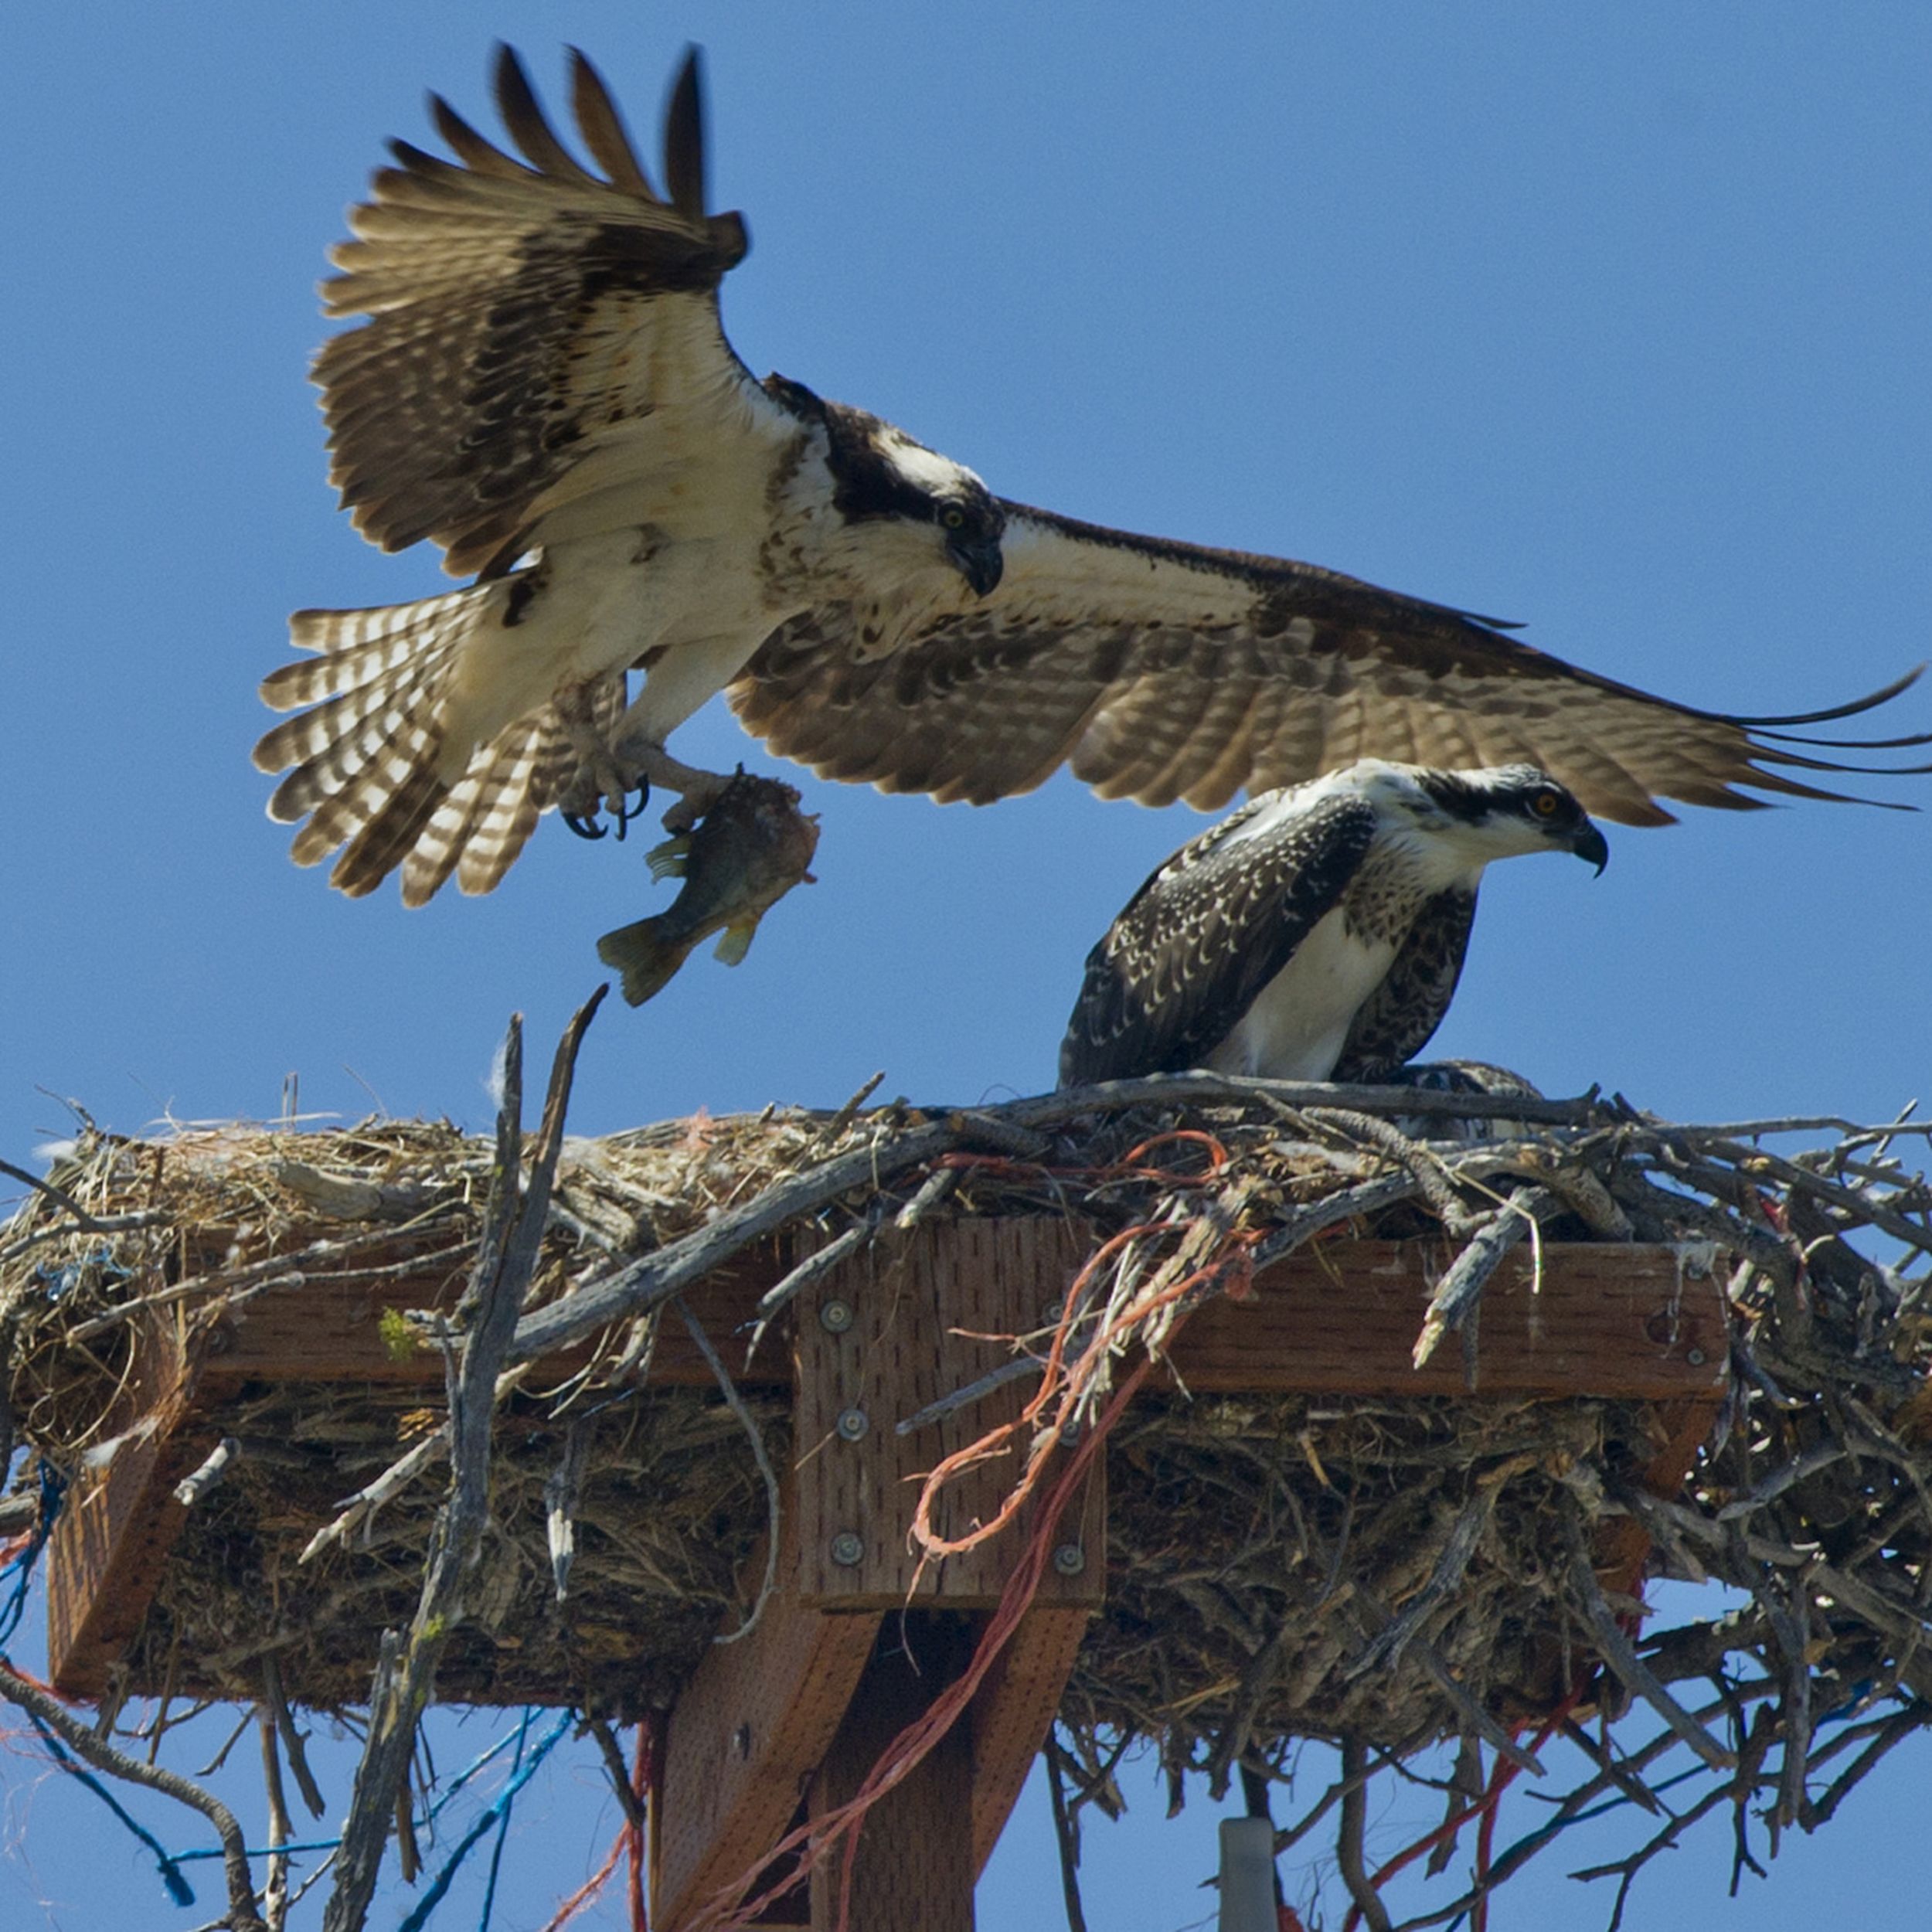 Gemakkelijk Toevallig Afstoten Nesting materials can do in ospreys | The Spokesman-Review